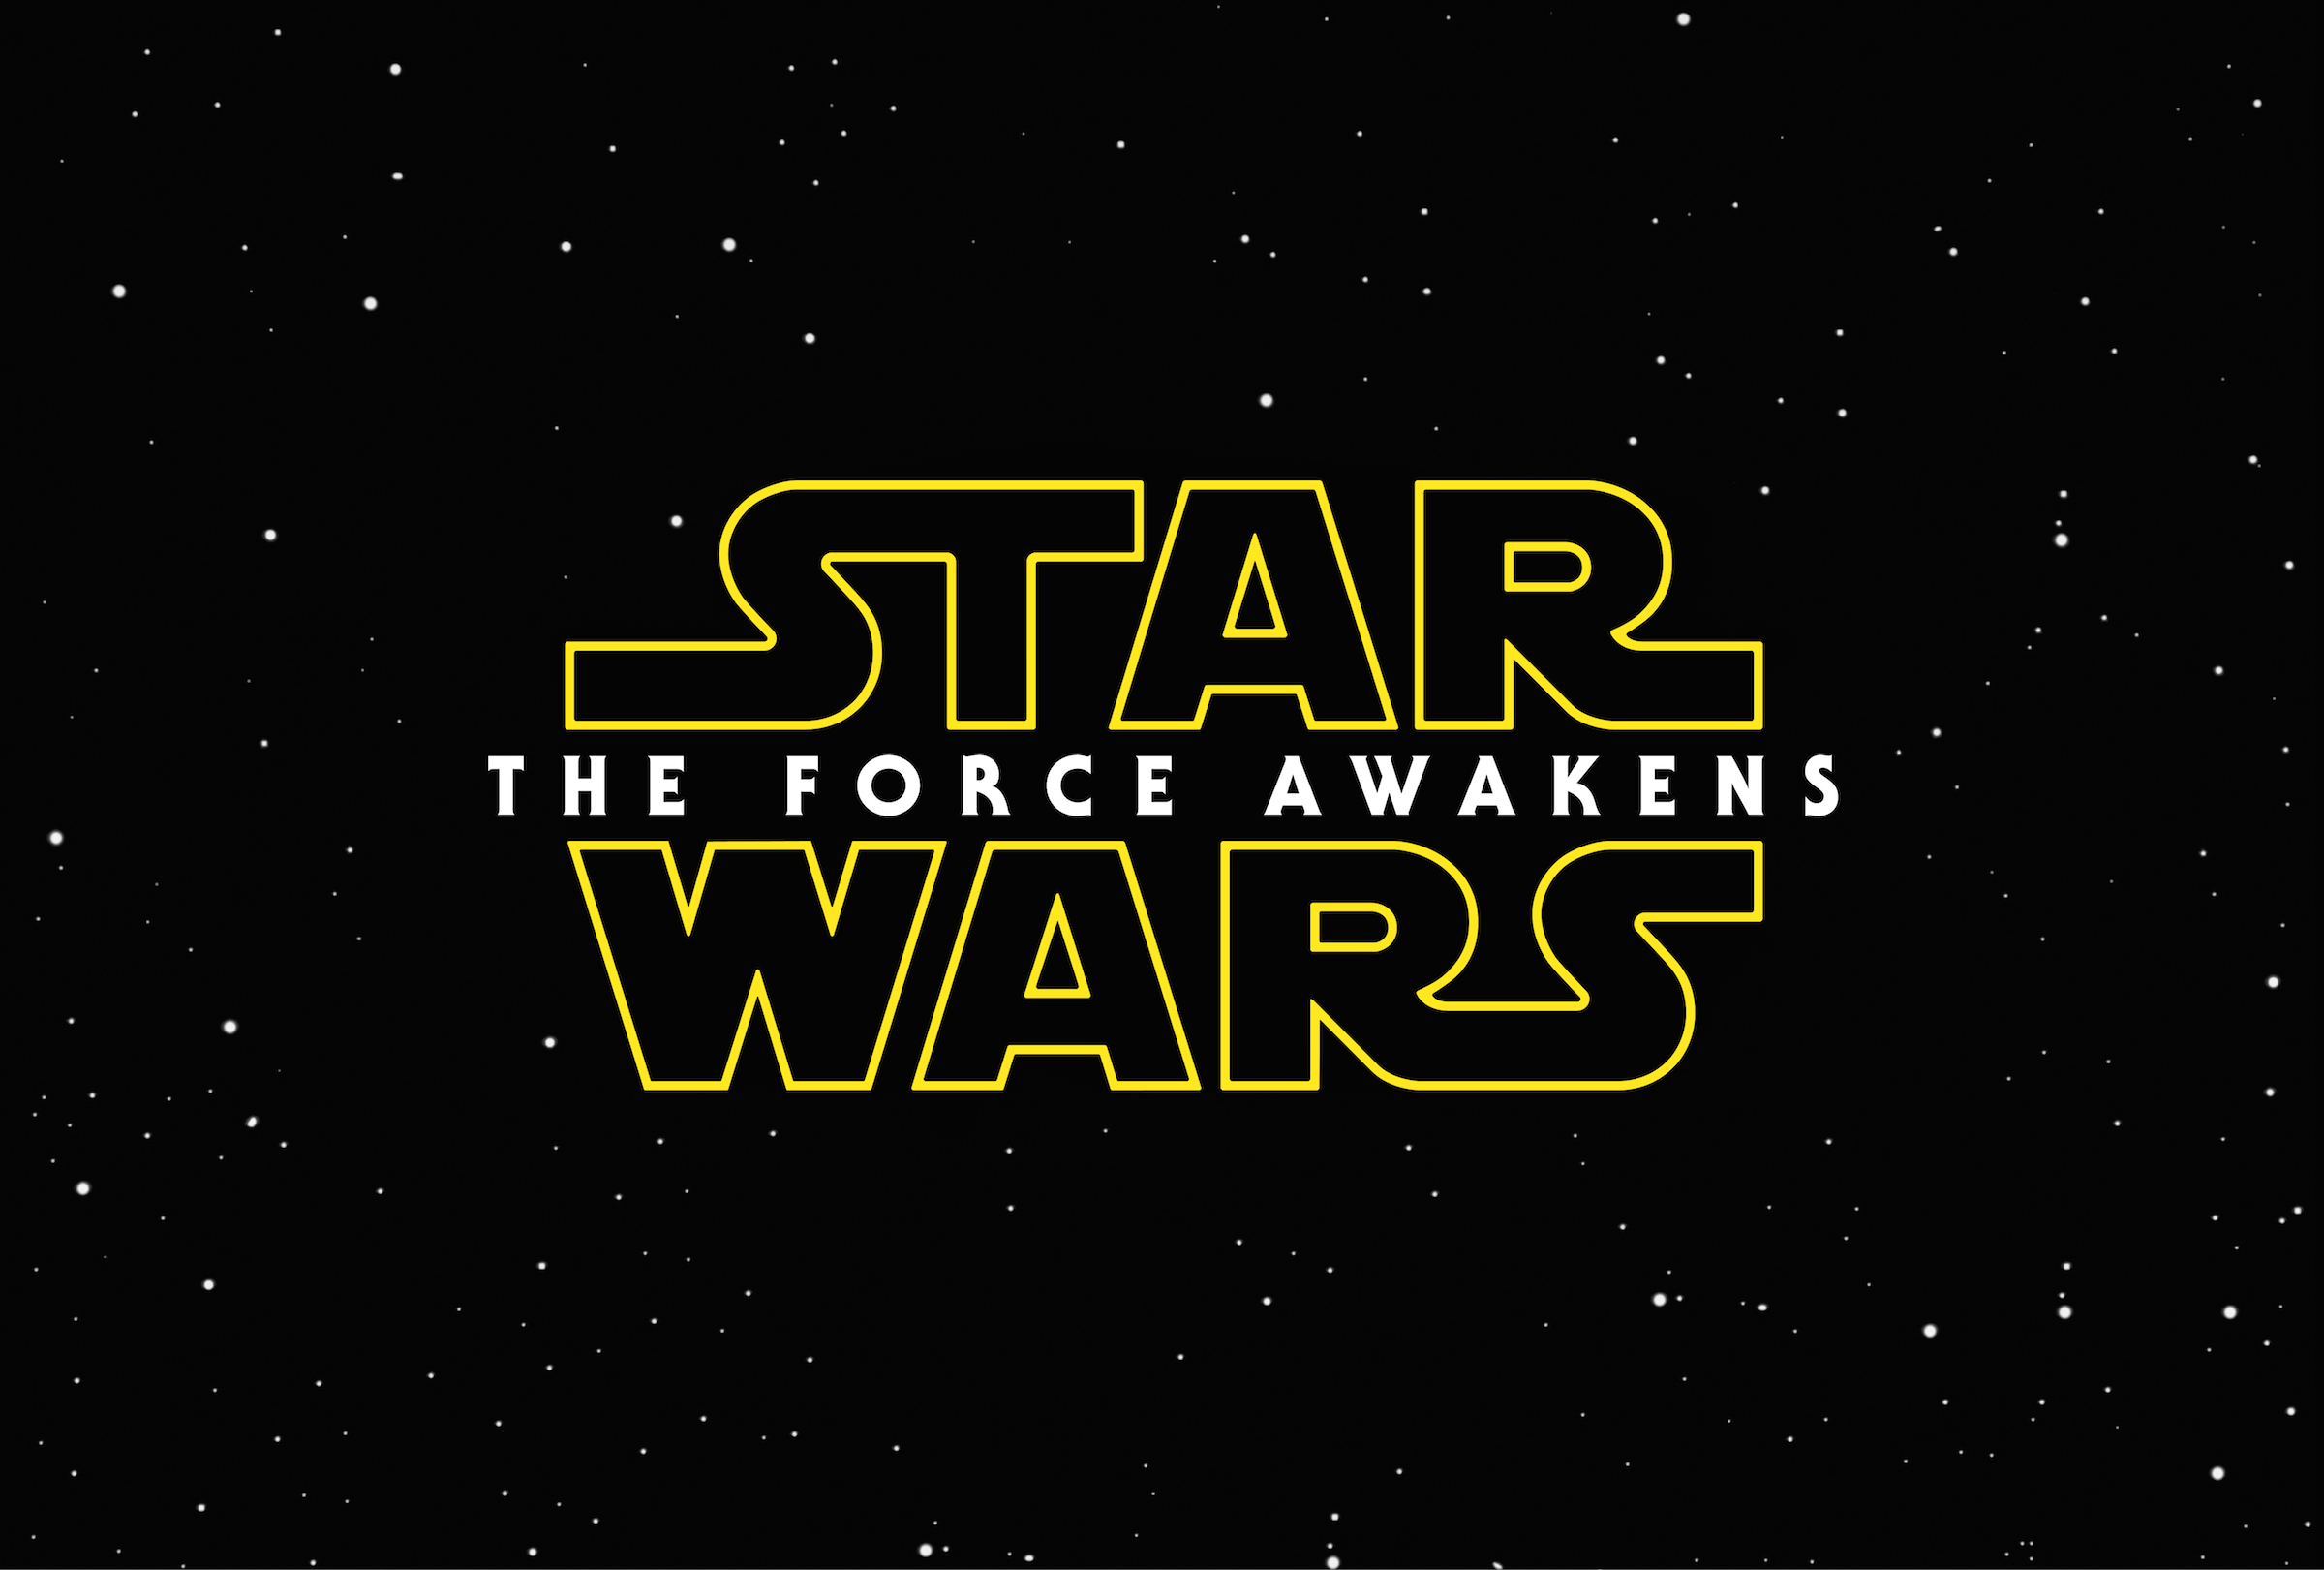 Star Wars: The Force Awakens Teaser trailer